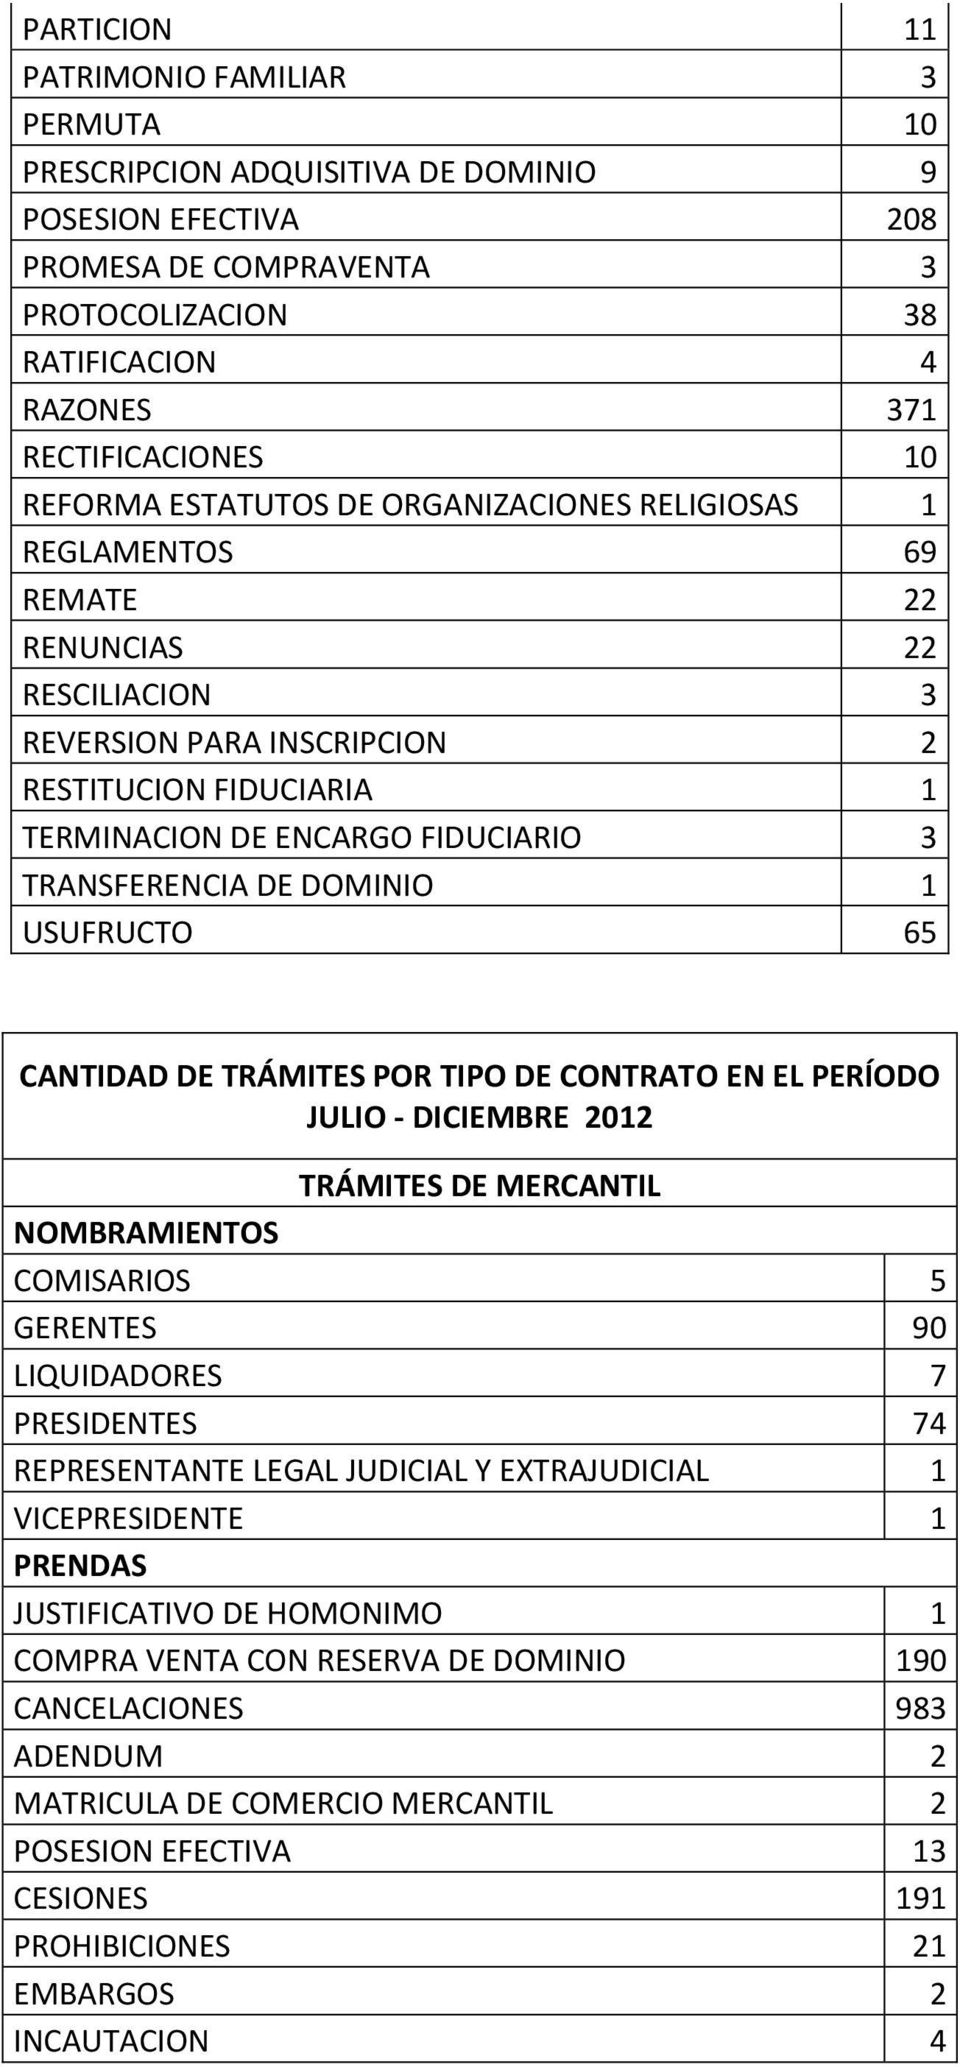 TRANSFERENCIA DE DOMINIO 1 USUFRUCTO 65 CANTIDAD DE TRÁMITES POR TIPO DE CONTRATO EN EL PERÍODO JULIO - DICIEMBRE 2012 TRÁMITES DE MERCANTIL NOMBRAMIENTOS COMISARIOS 5 GERENTES 90 LIQUIDADORES 7